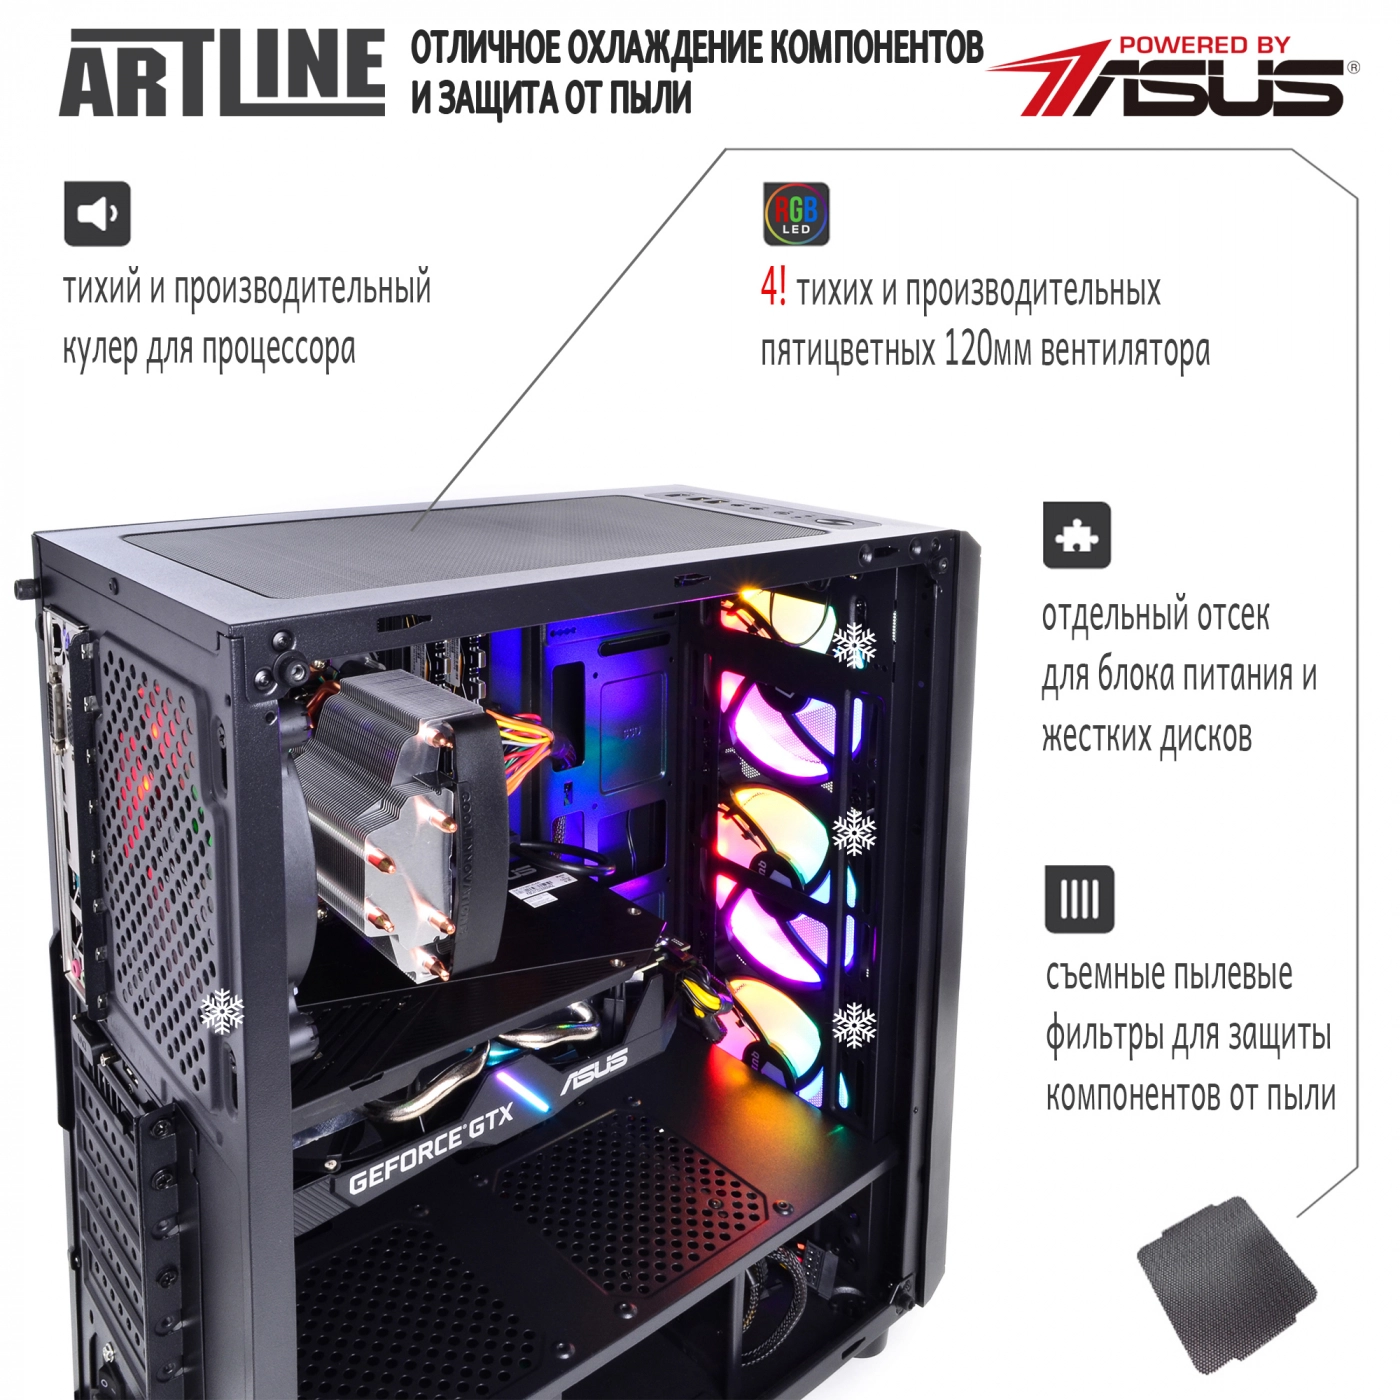 Купить Компьютер ARTLINE Gaming X55v20 - фото 3